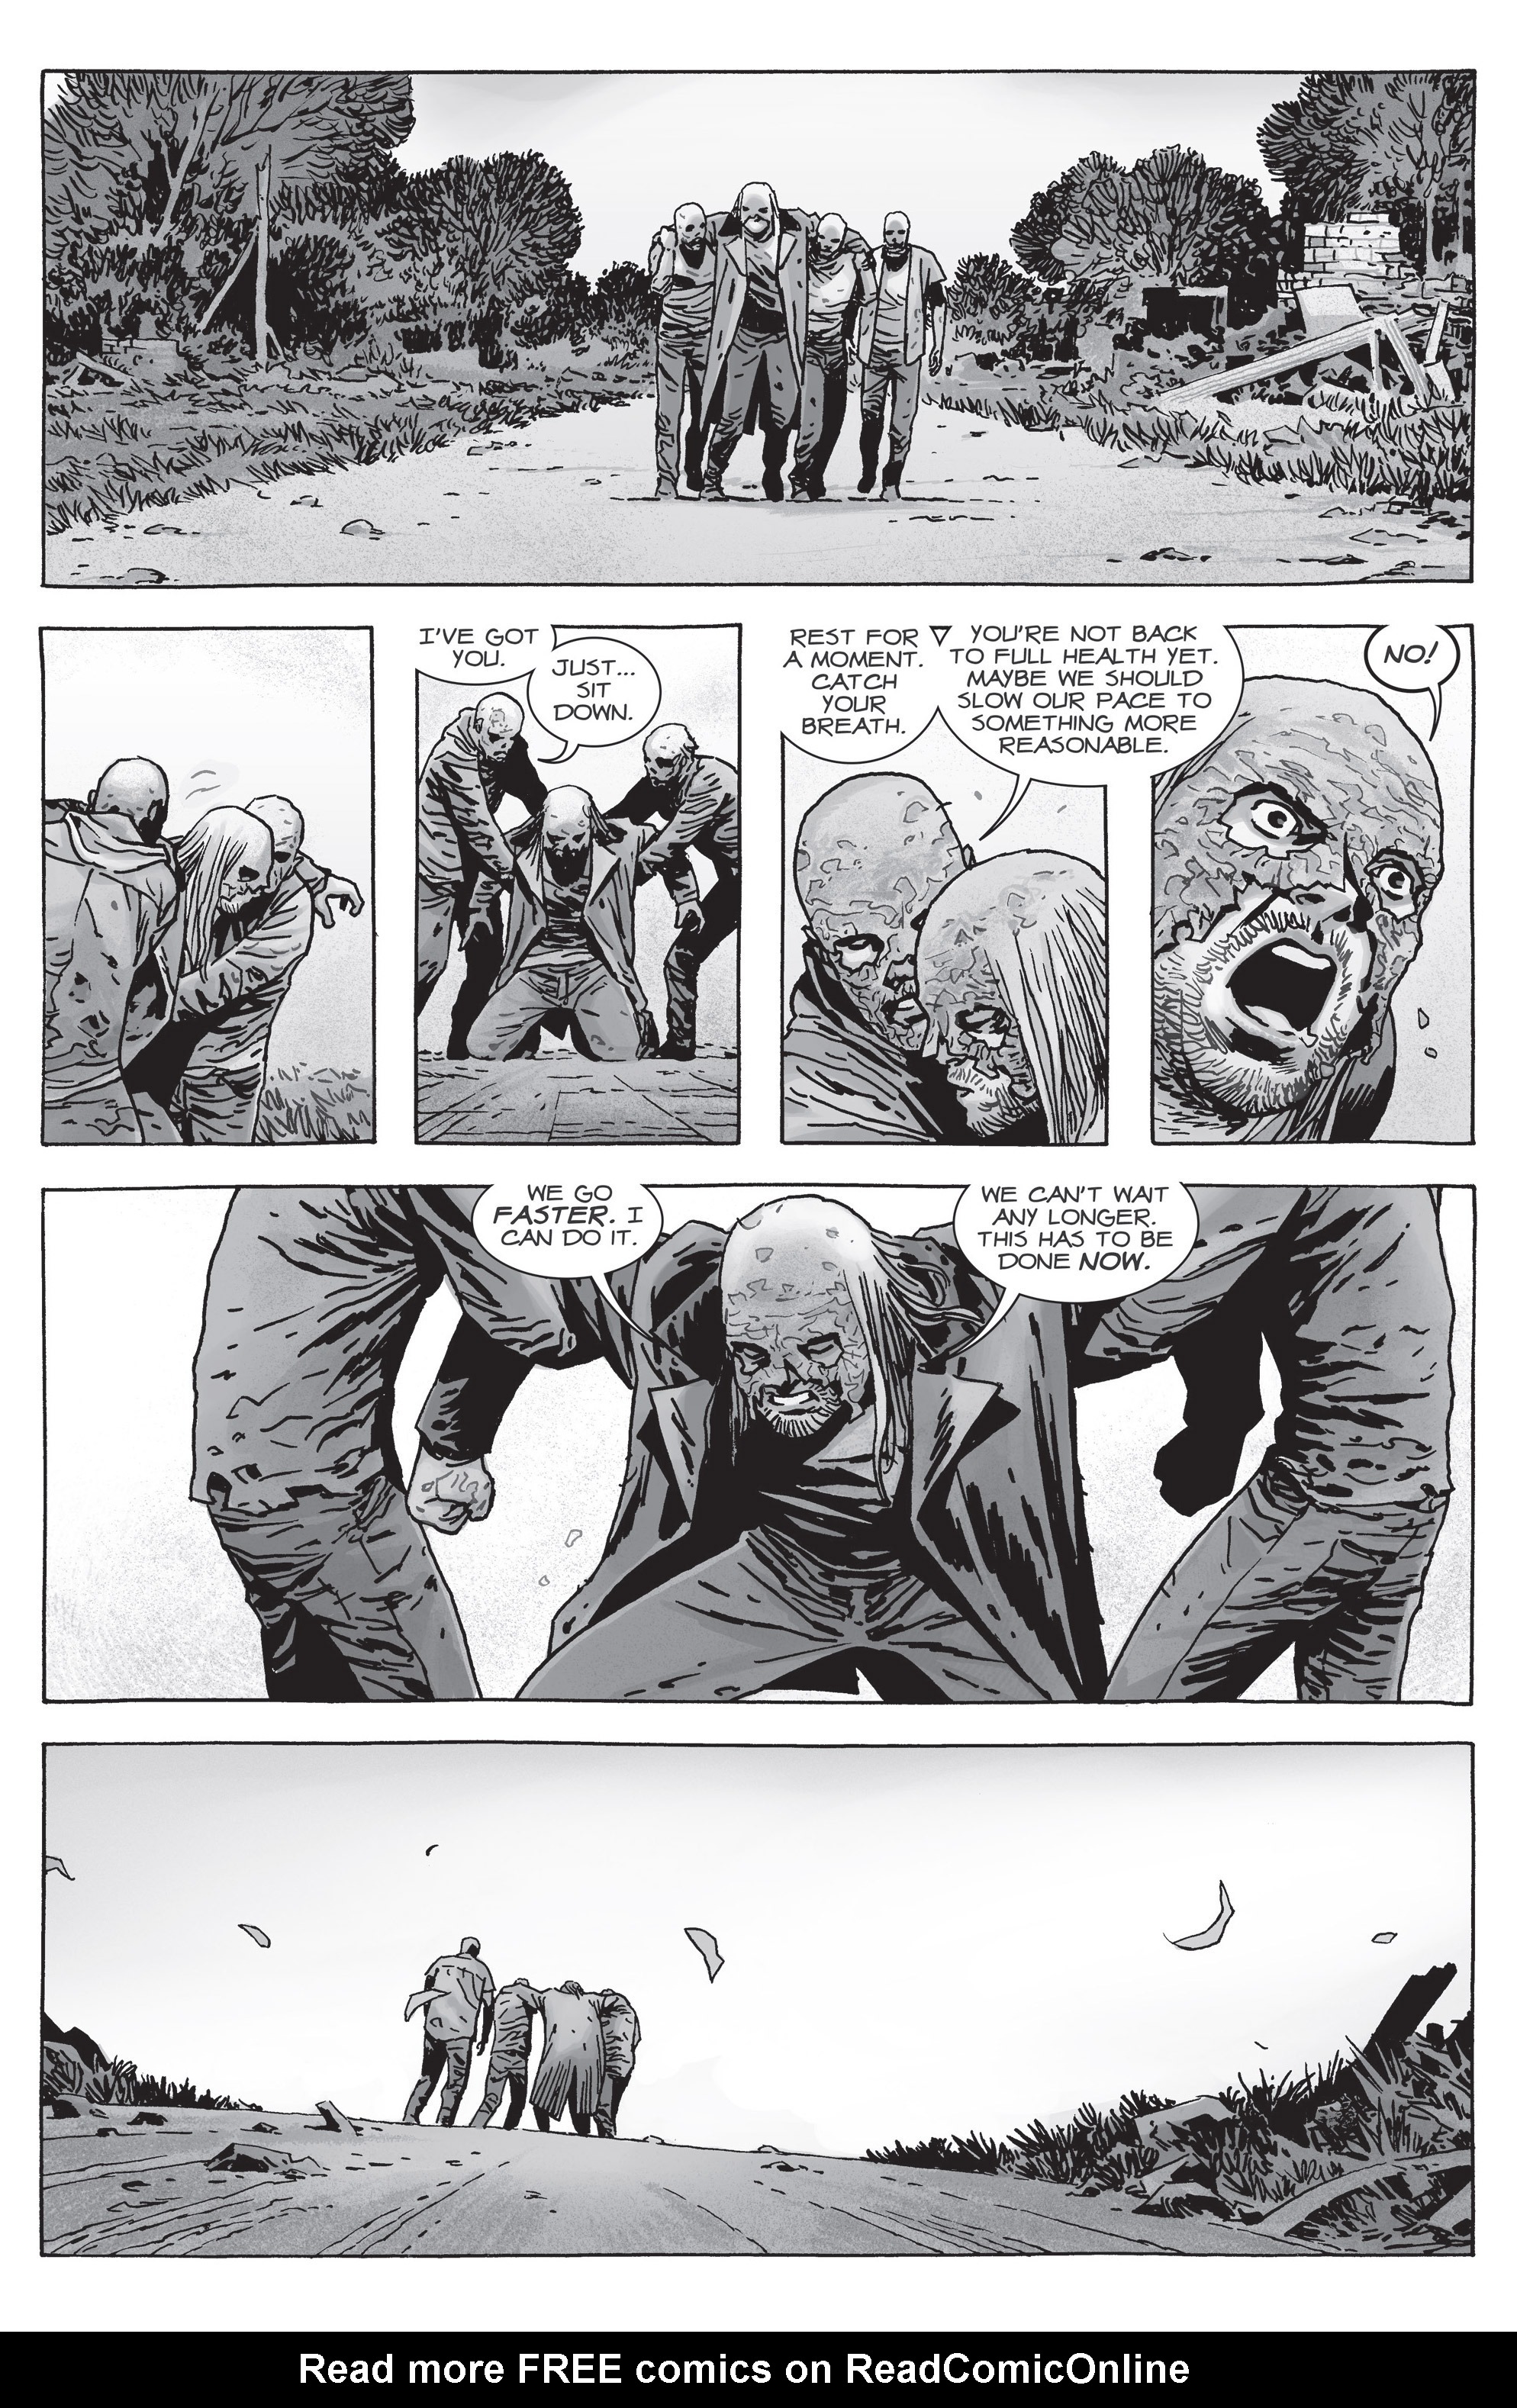 Read online The Walking Dead comic -  Issue #162 - 11